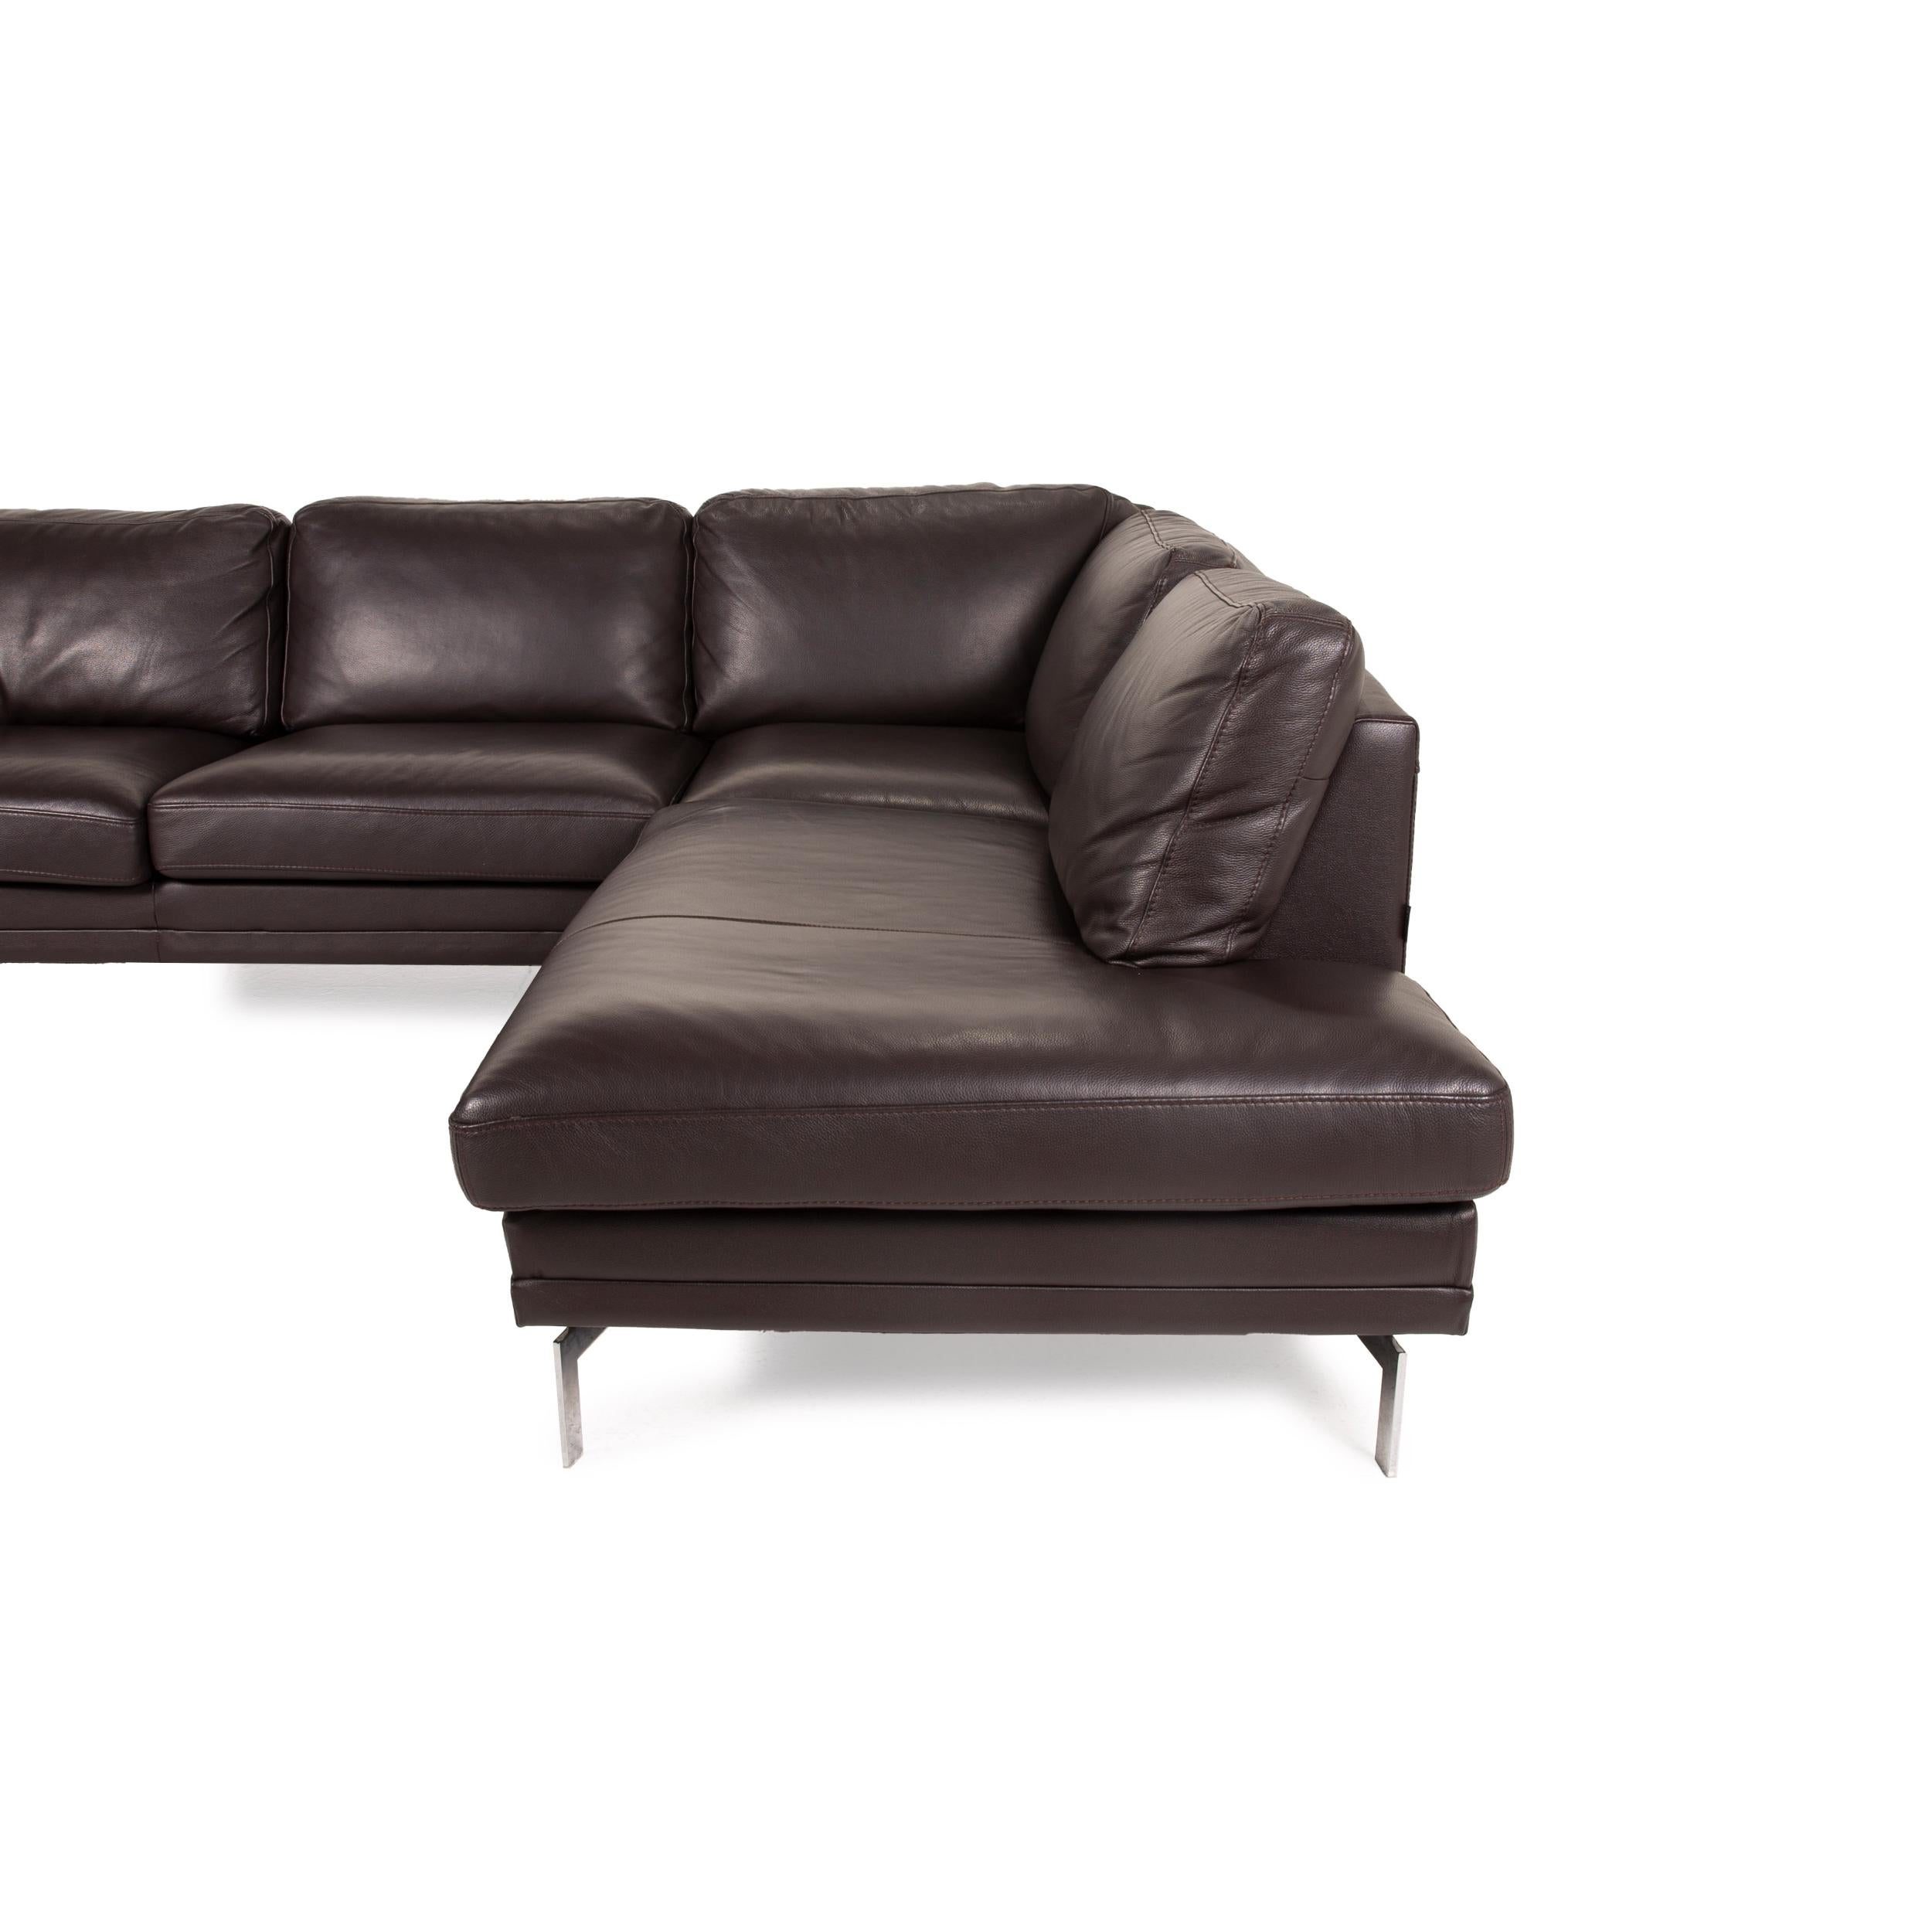 Contemporary Furninova leather sofa dark brown corner sofa couch For Sale